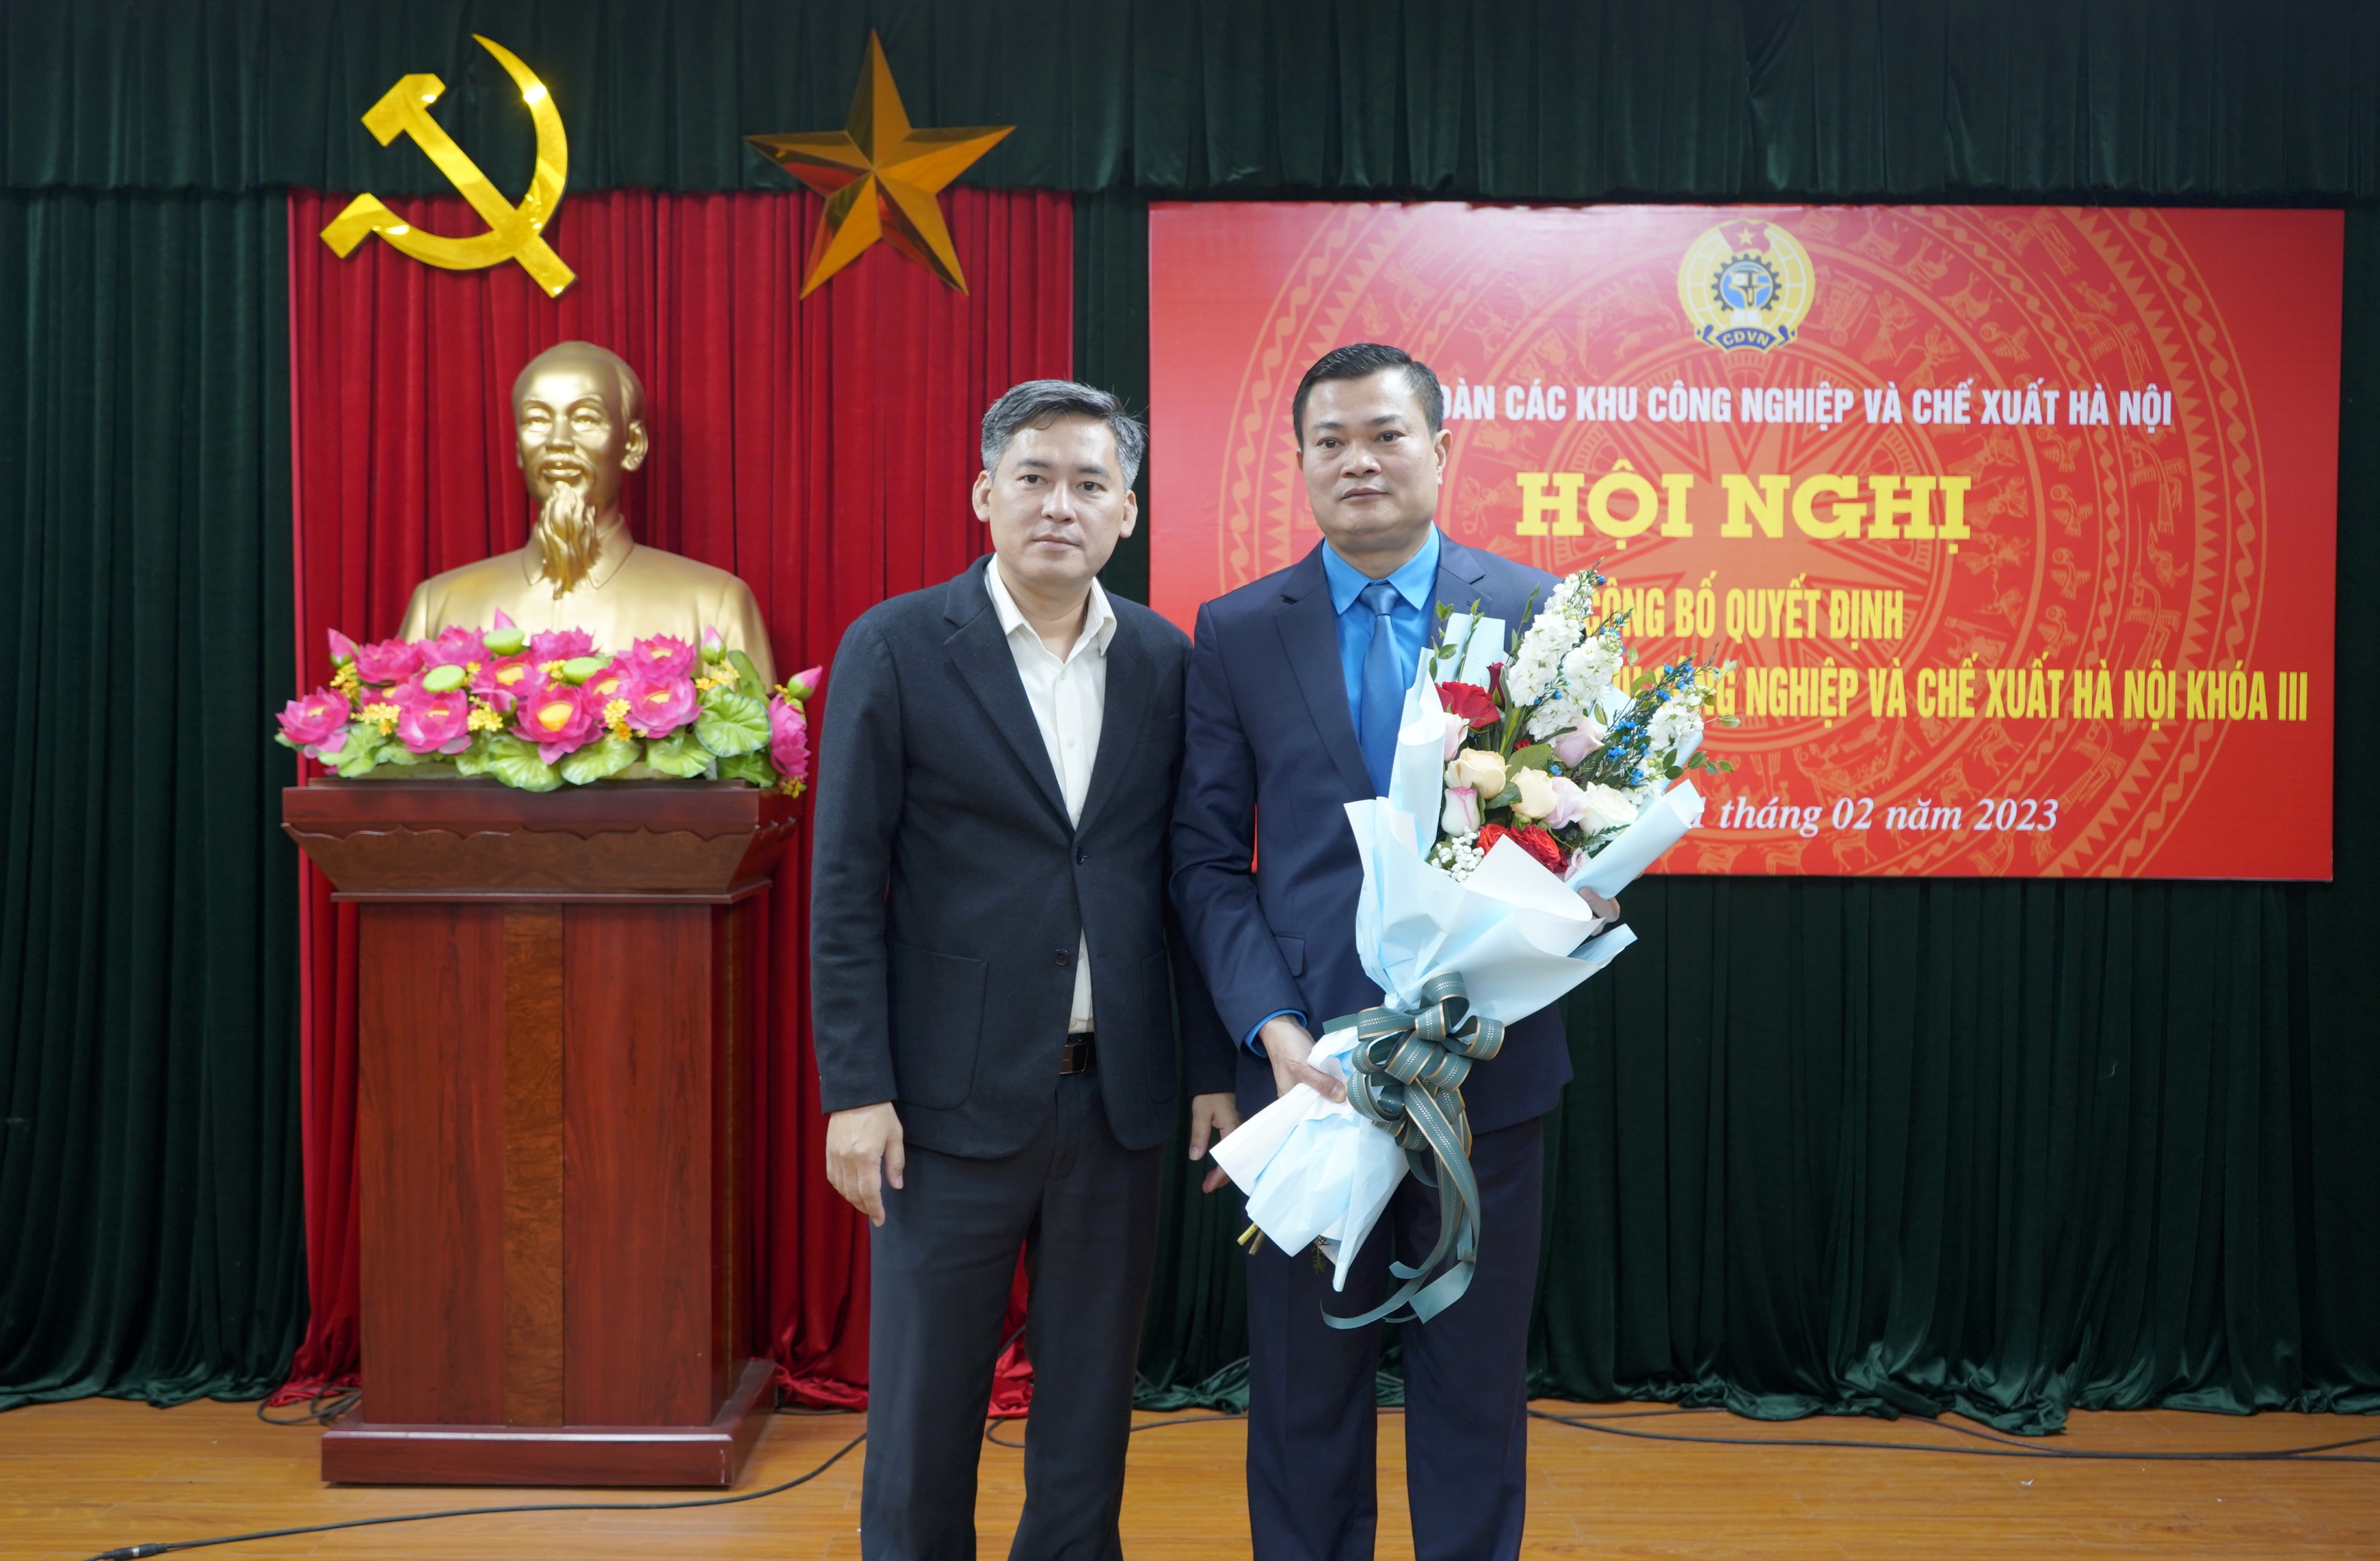 Ông Nguyễn Đình Thắng giữ chức Chủ tịch Công đoàn các Khu công nghiệp và chế xuất Hà Nội